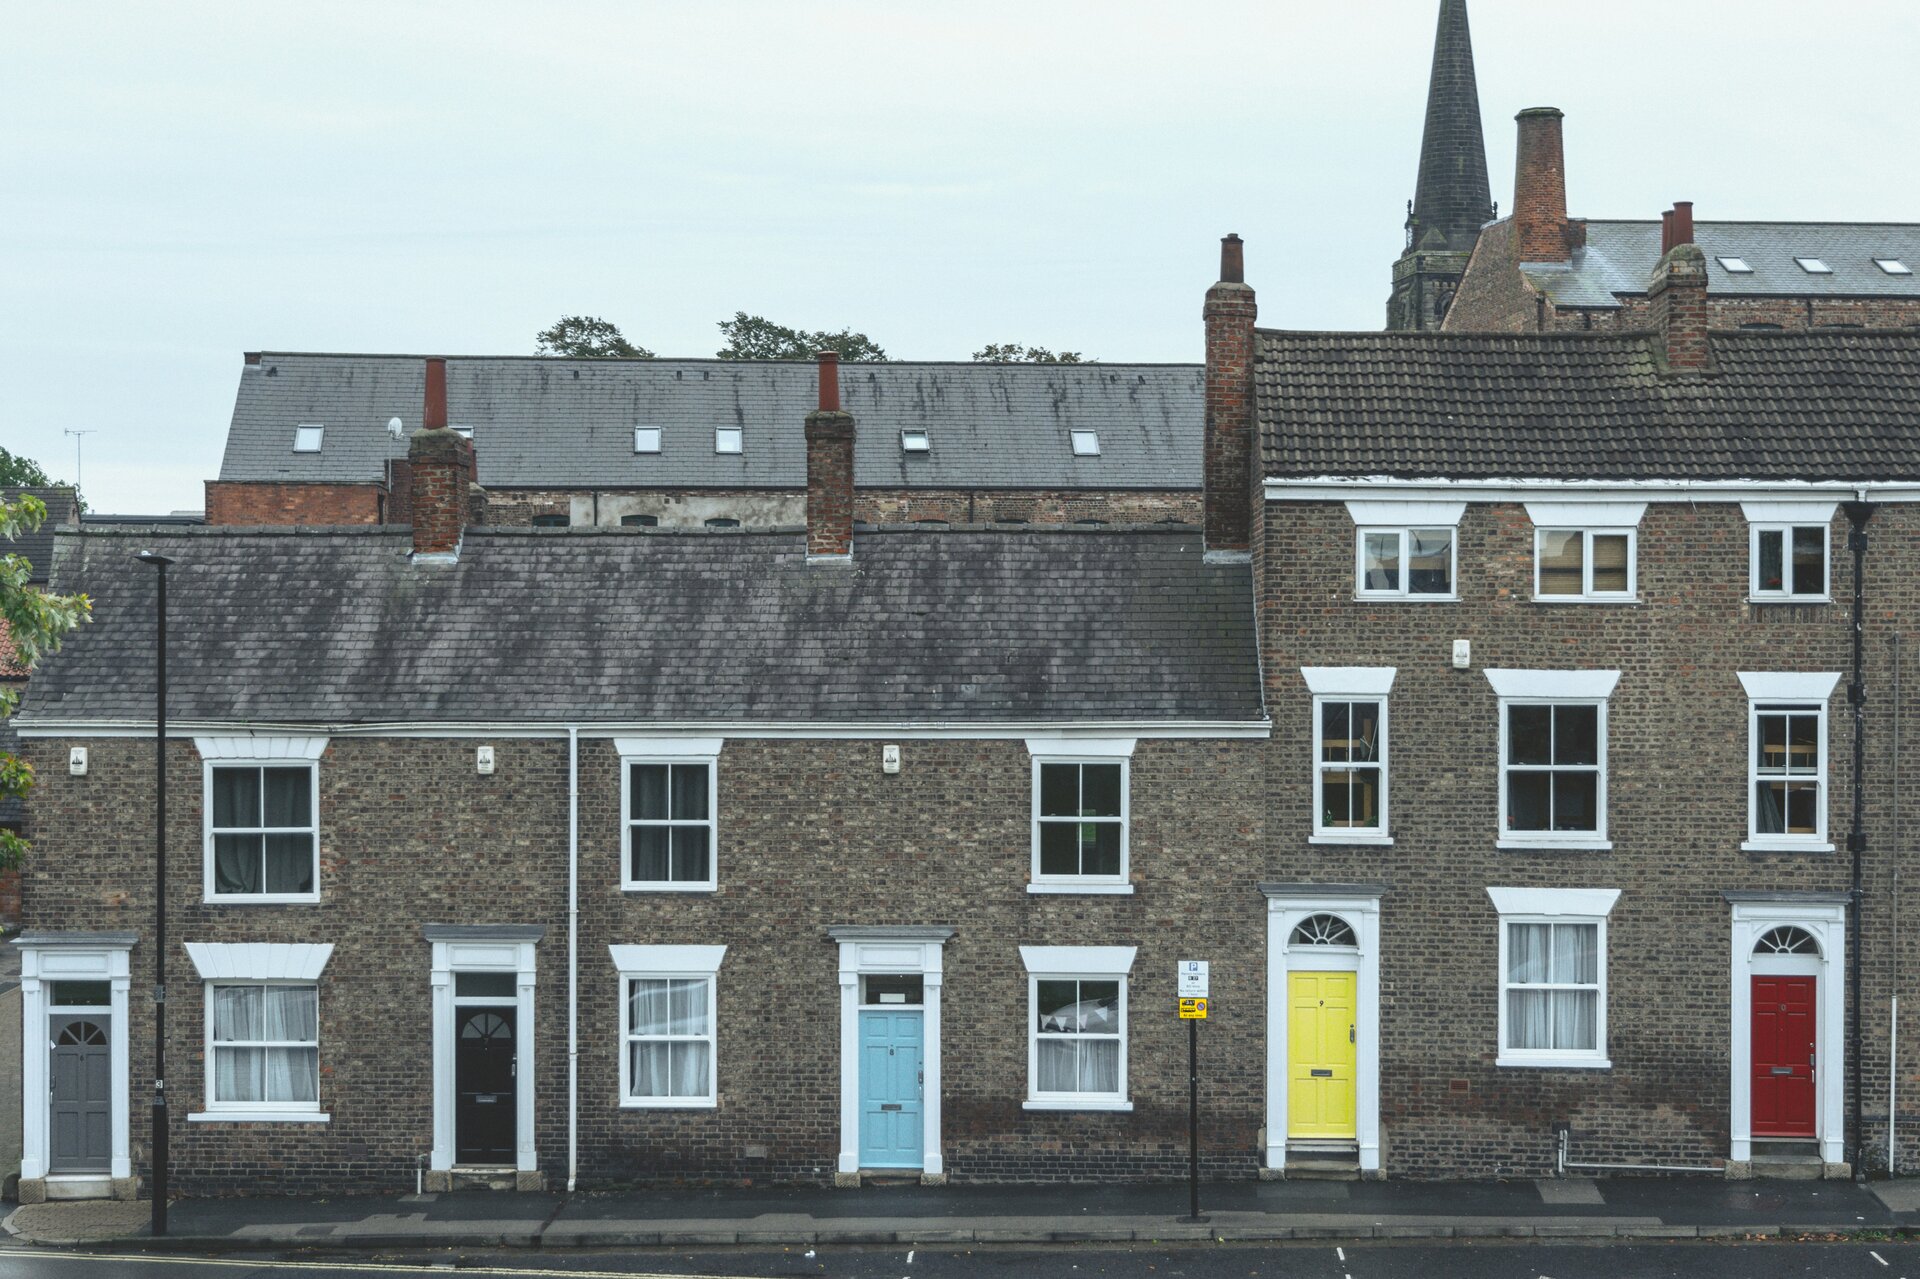 Auf dem Bild sieht man eine Häuserreihe mit farbigen Eingangstüren | © Gonzalo Facello/Unsplash